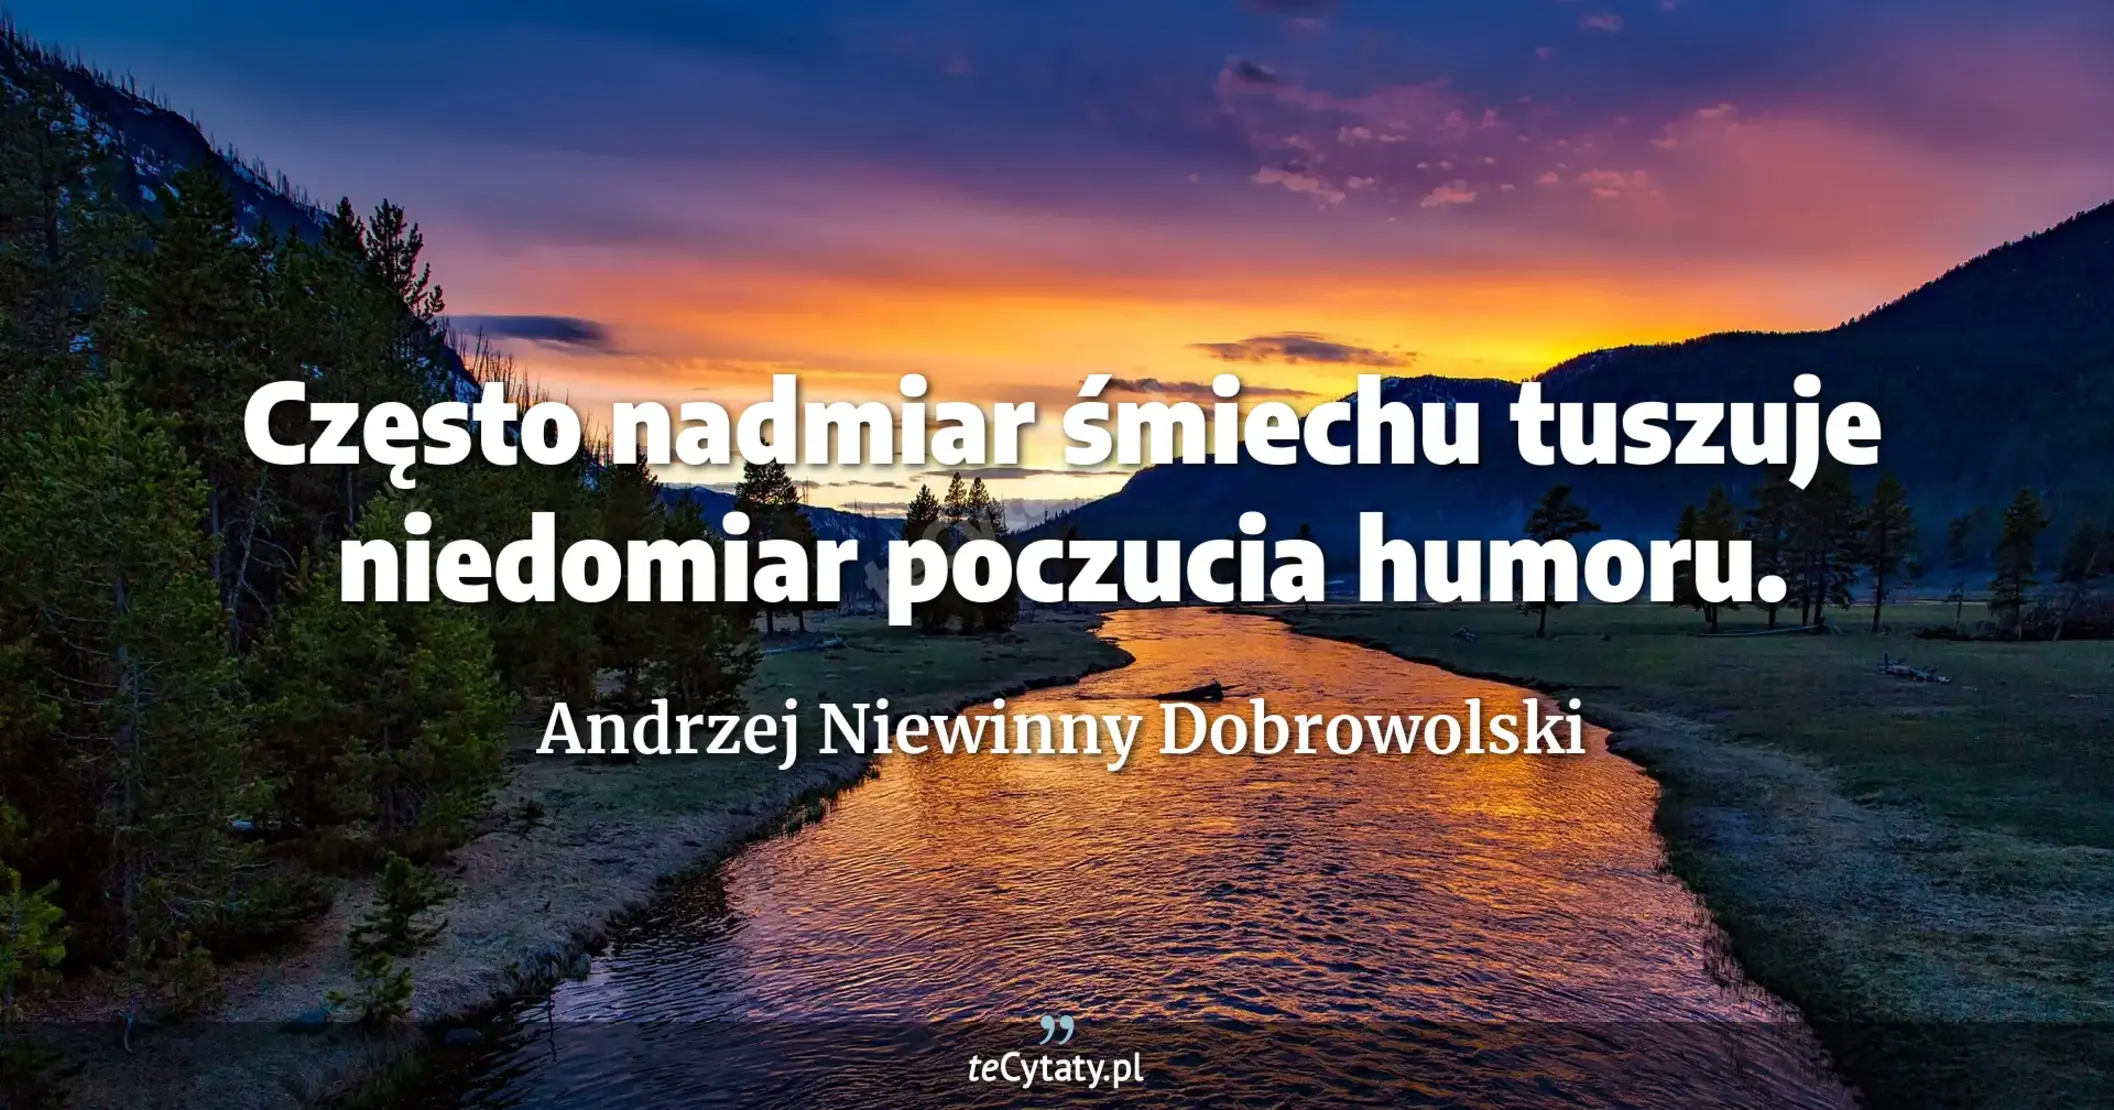 Często nadmiar śmiechu tuszuje niedomiar poczucia humoru. - Andrzej Niewinny Dobrowolski